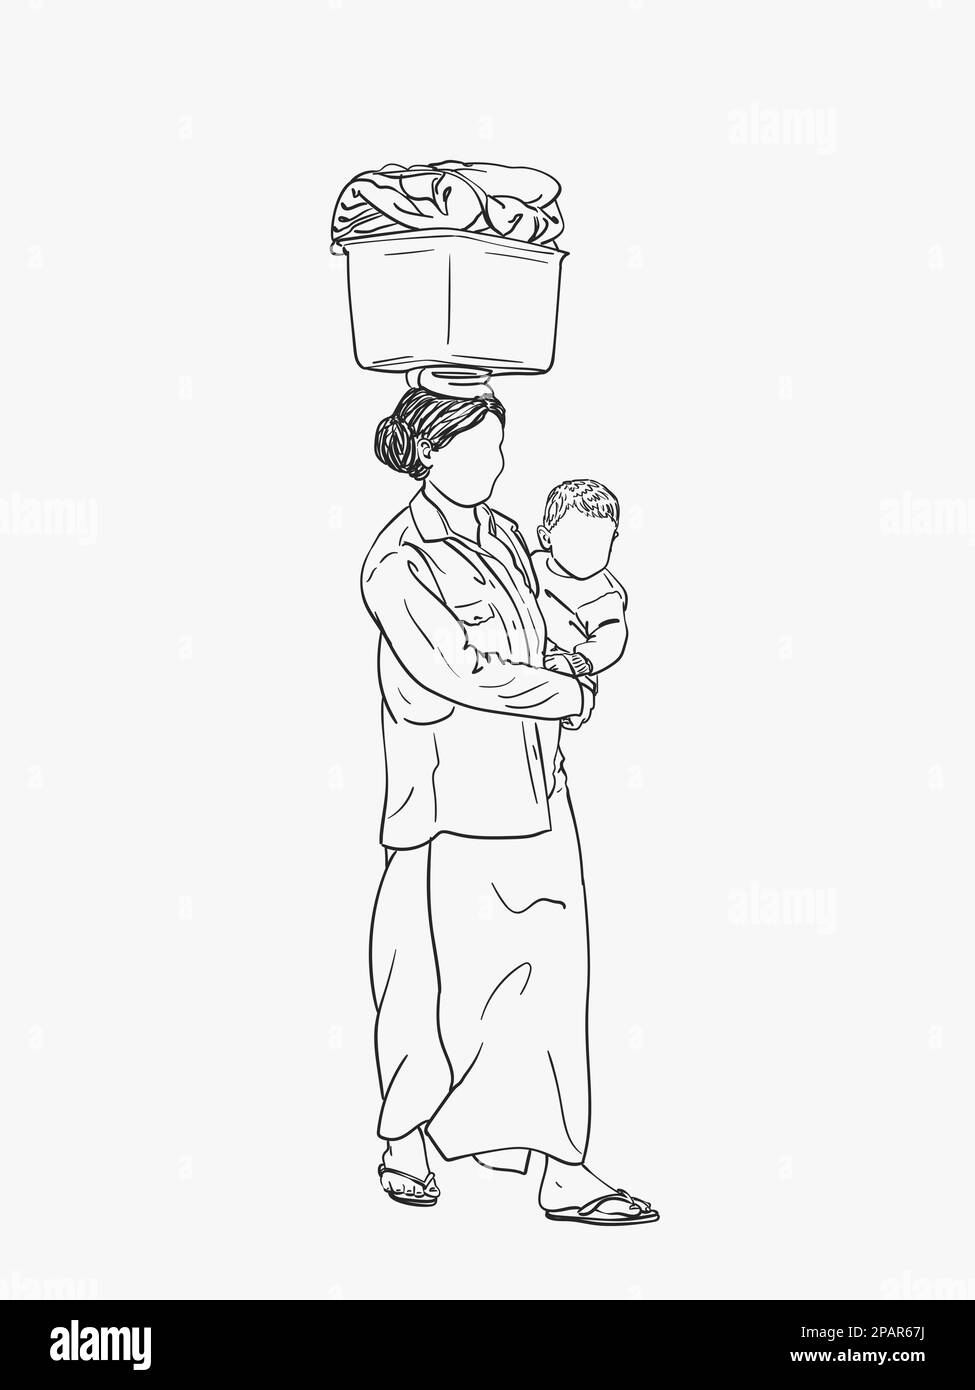 Femme birmane avec bébé dans les bras et sans visage porte une grande boîte sur sa tête, esquisse vectorielle, dessin linéaire à la main Illustration de Vecteur